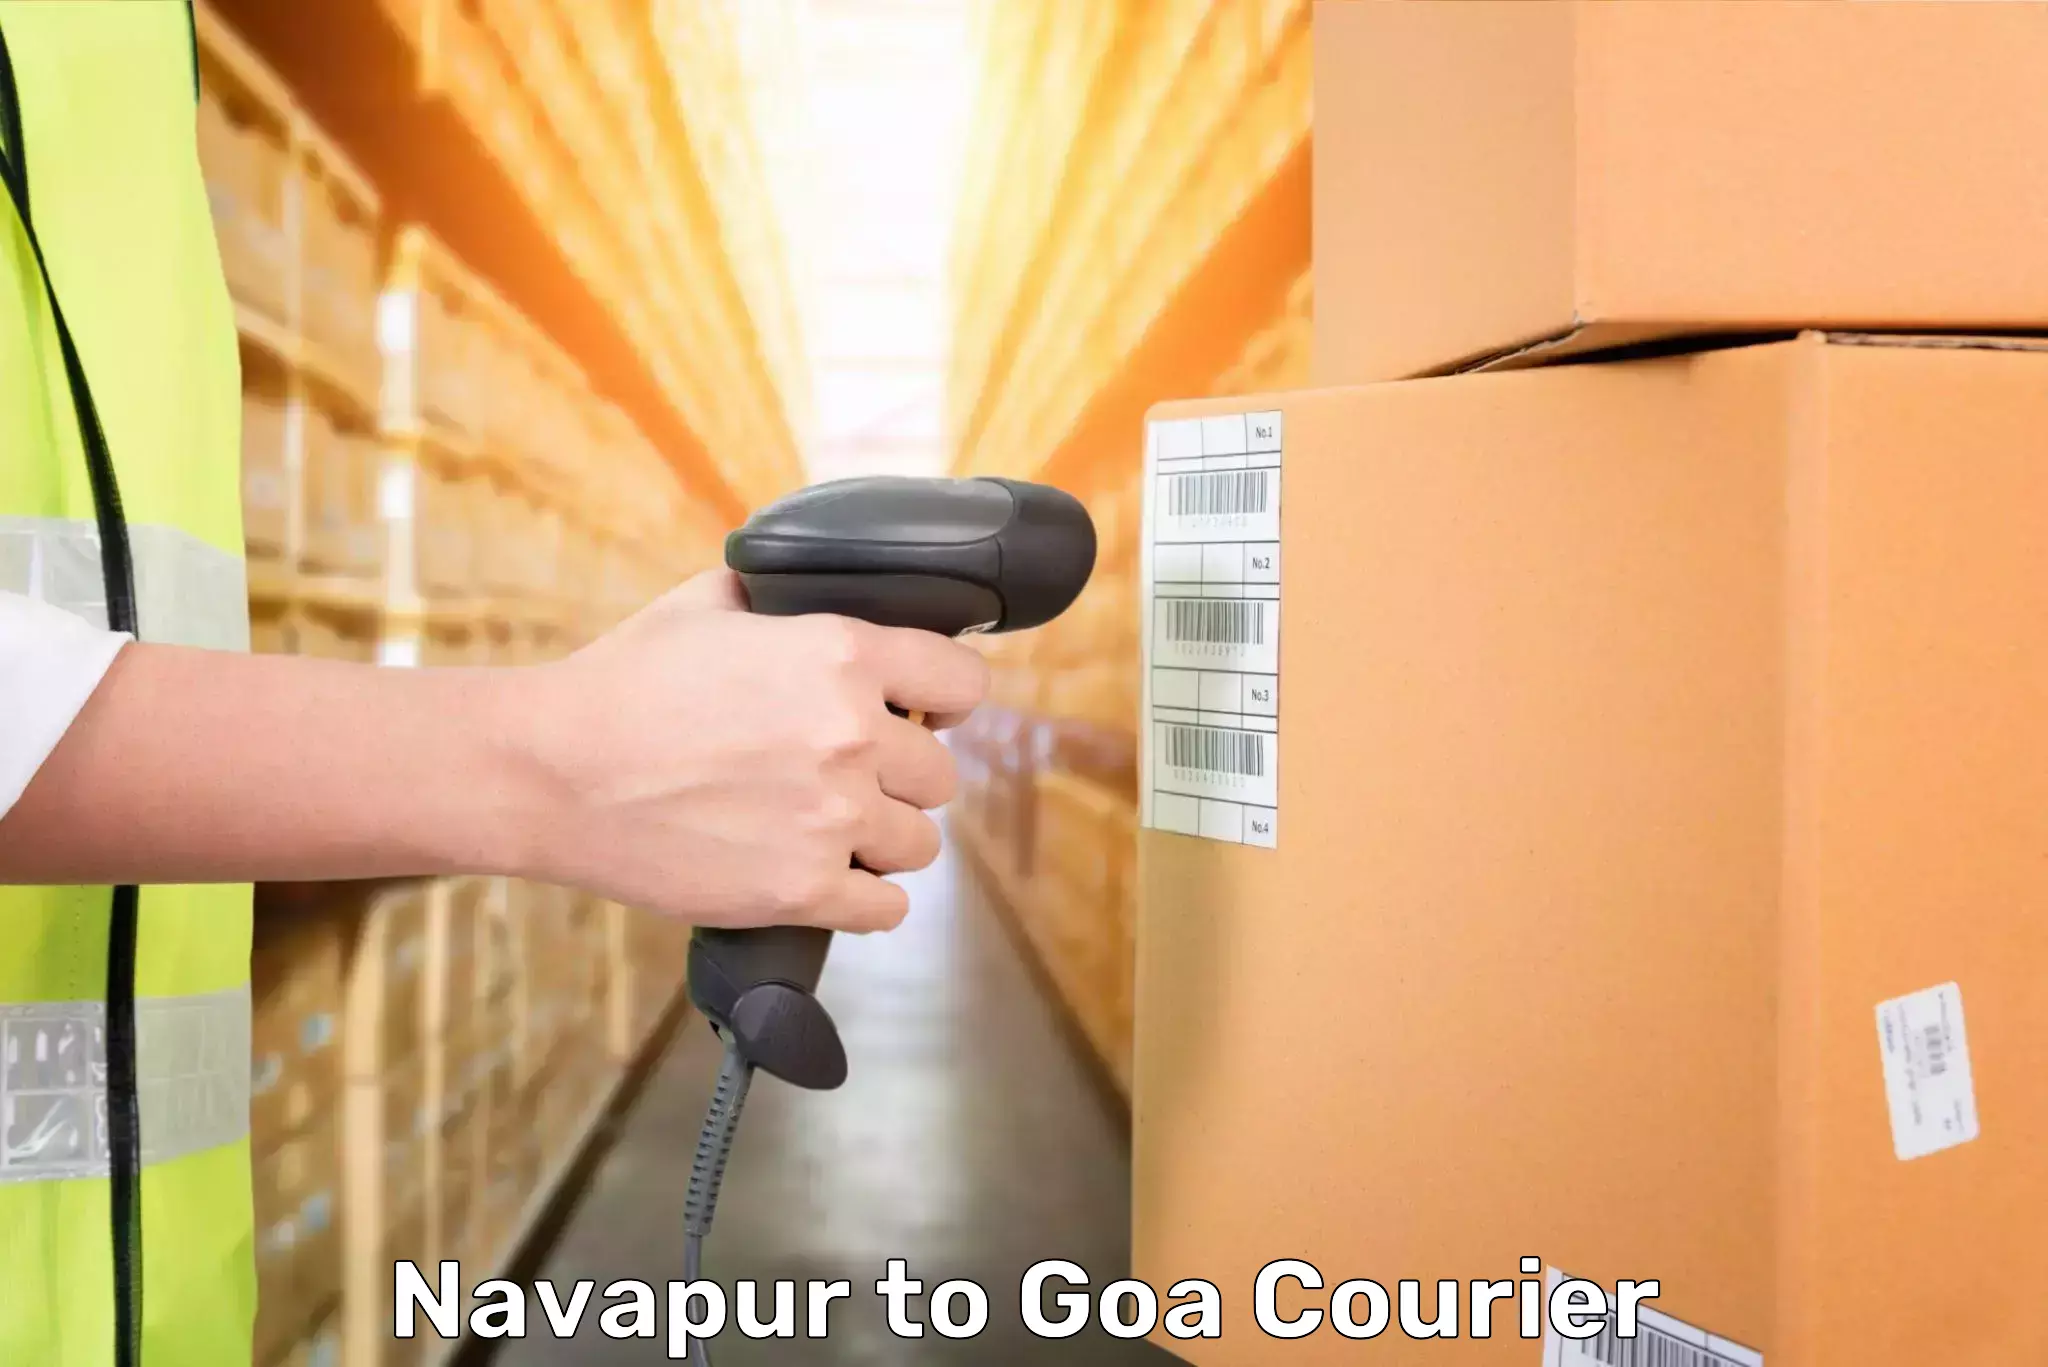 Emergency baggage service Navapur to Goa